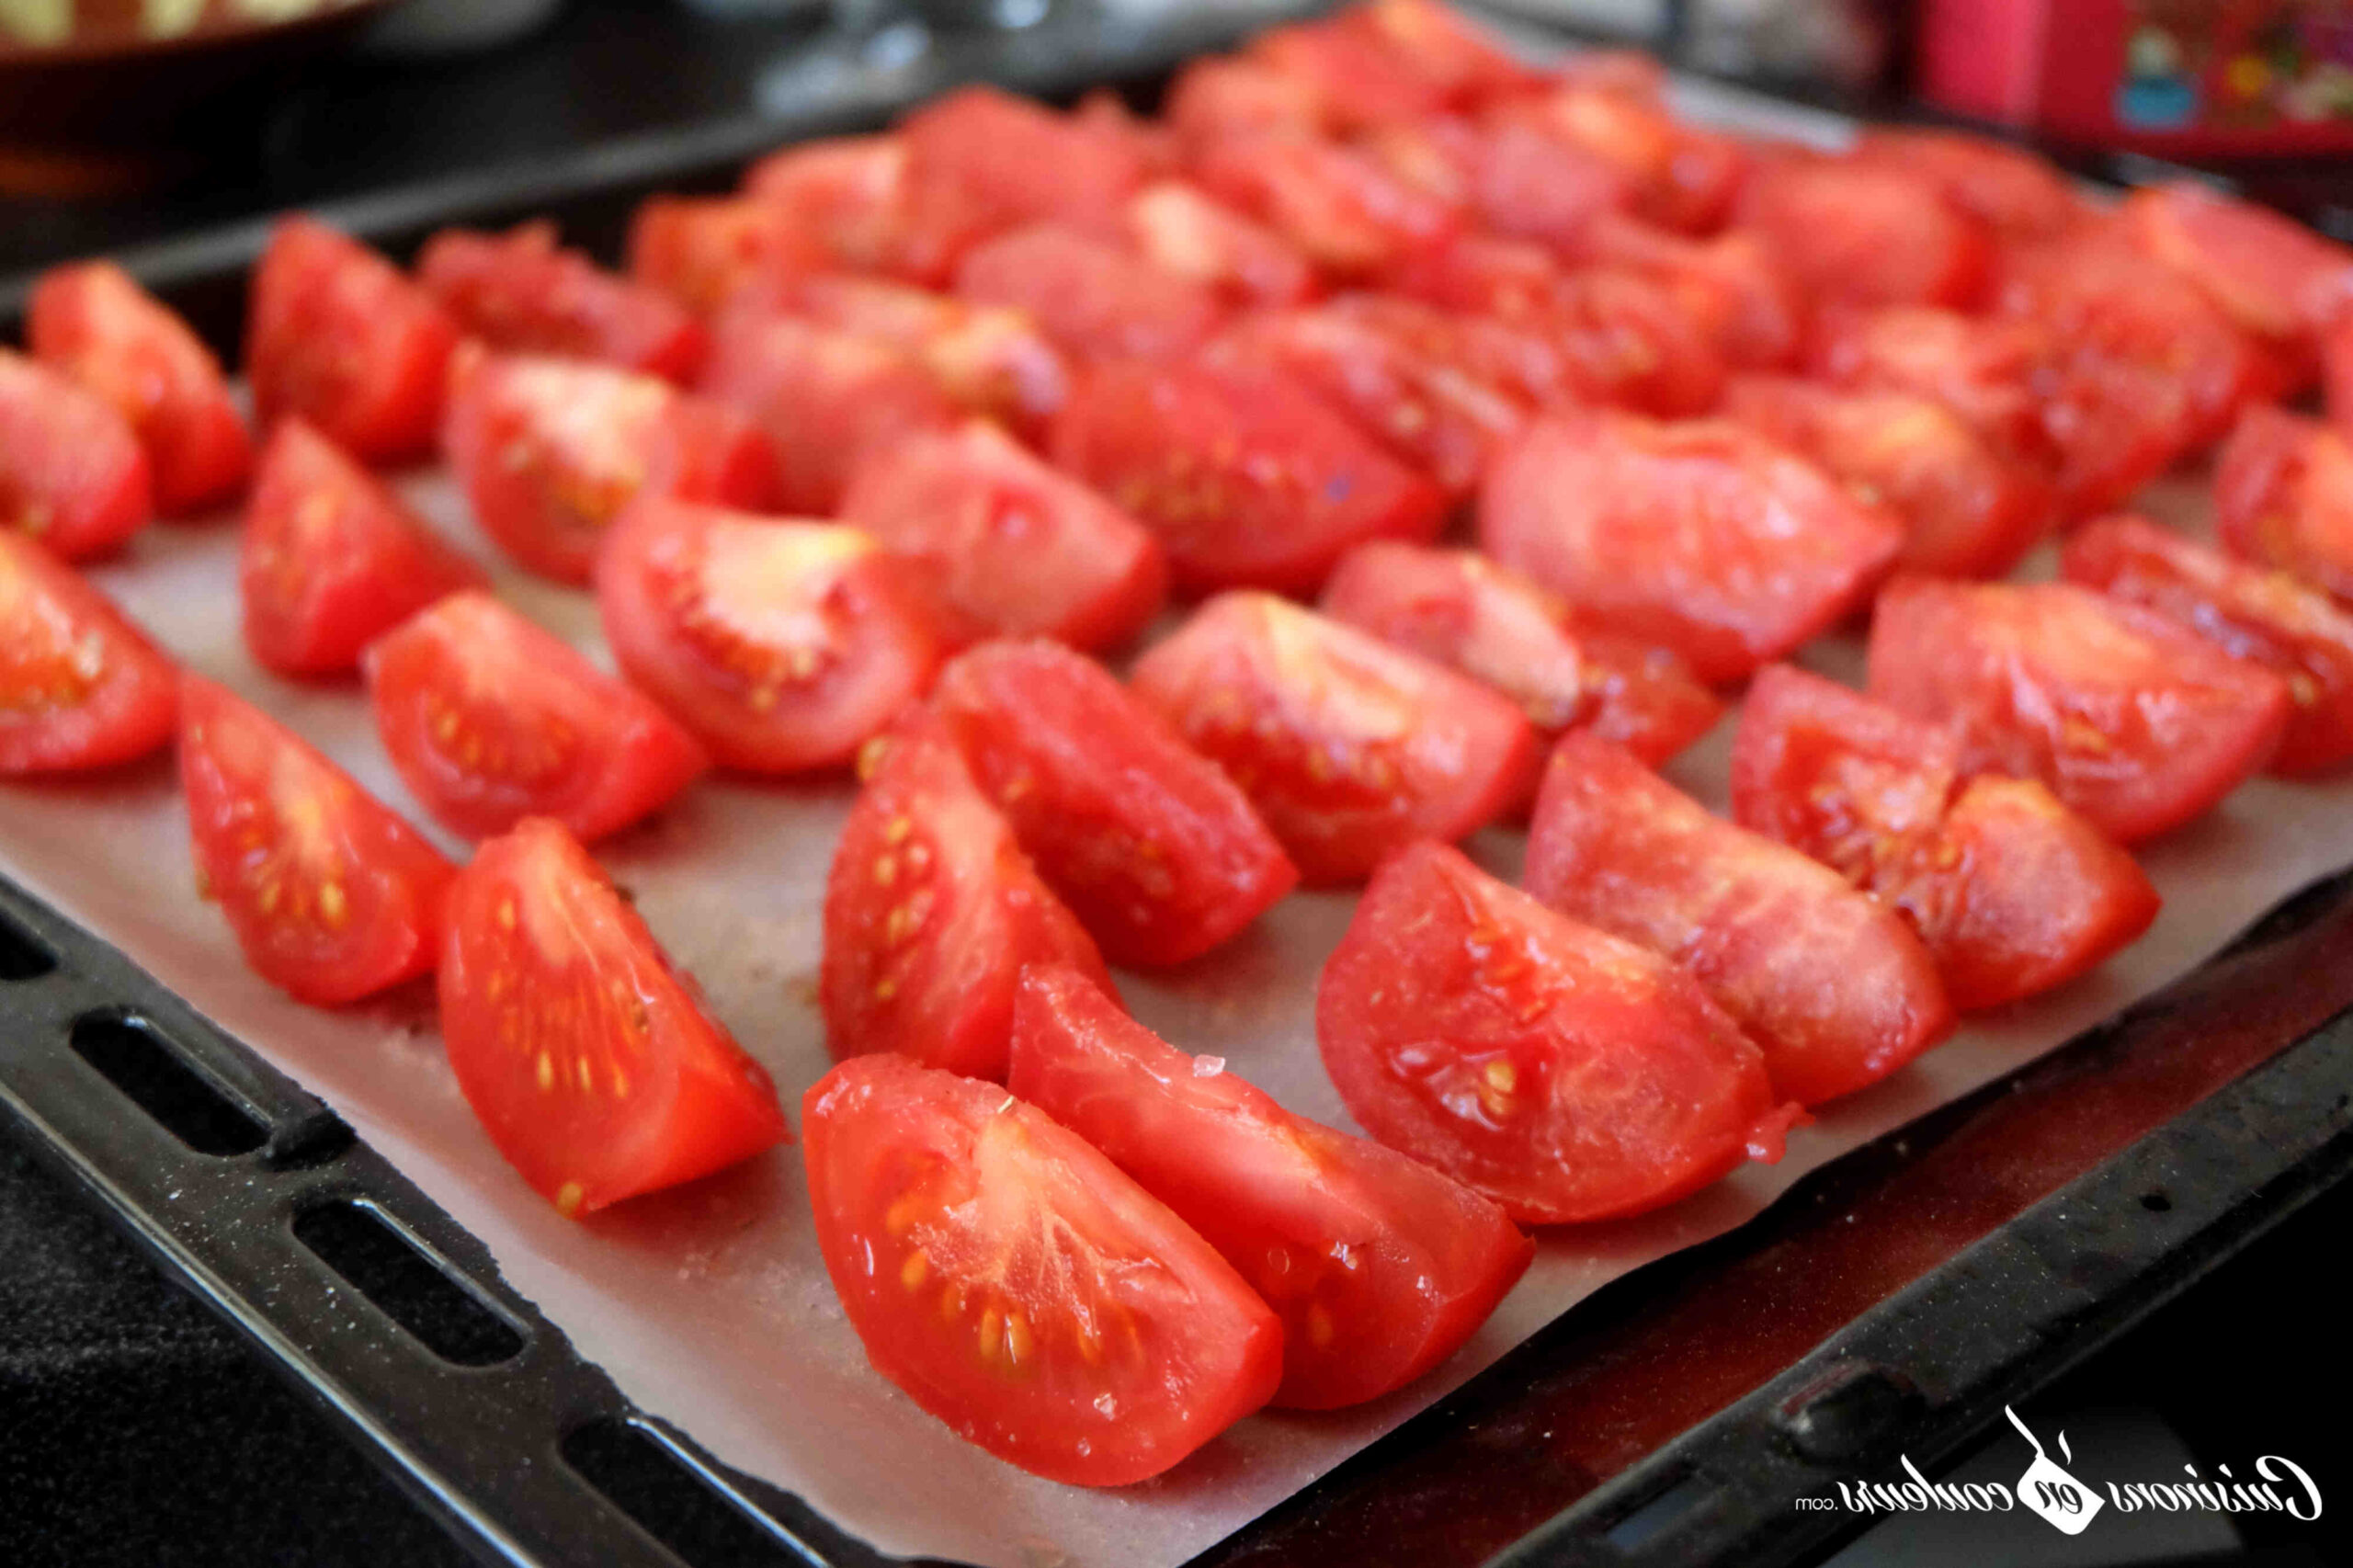 Comment conserver les tomates dans l'huile ?